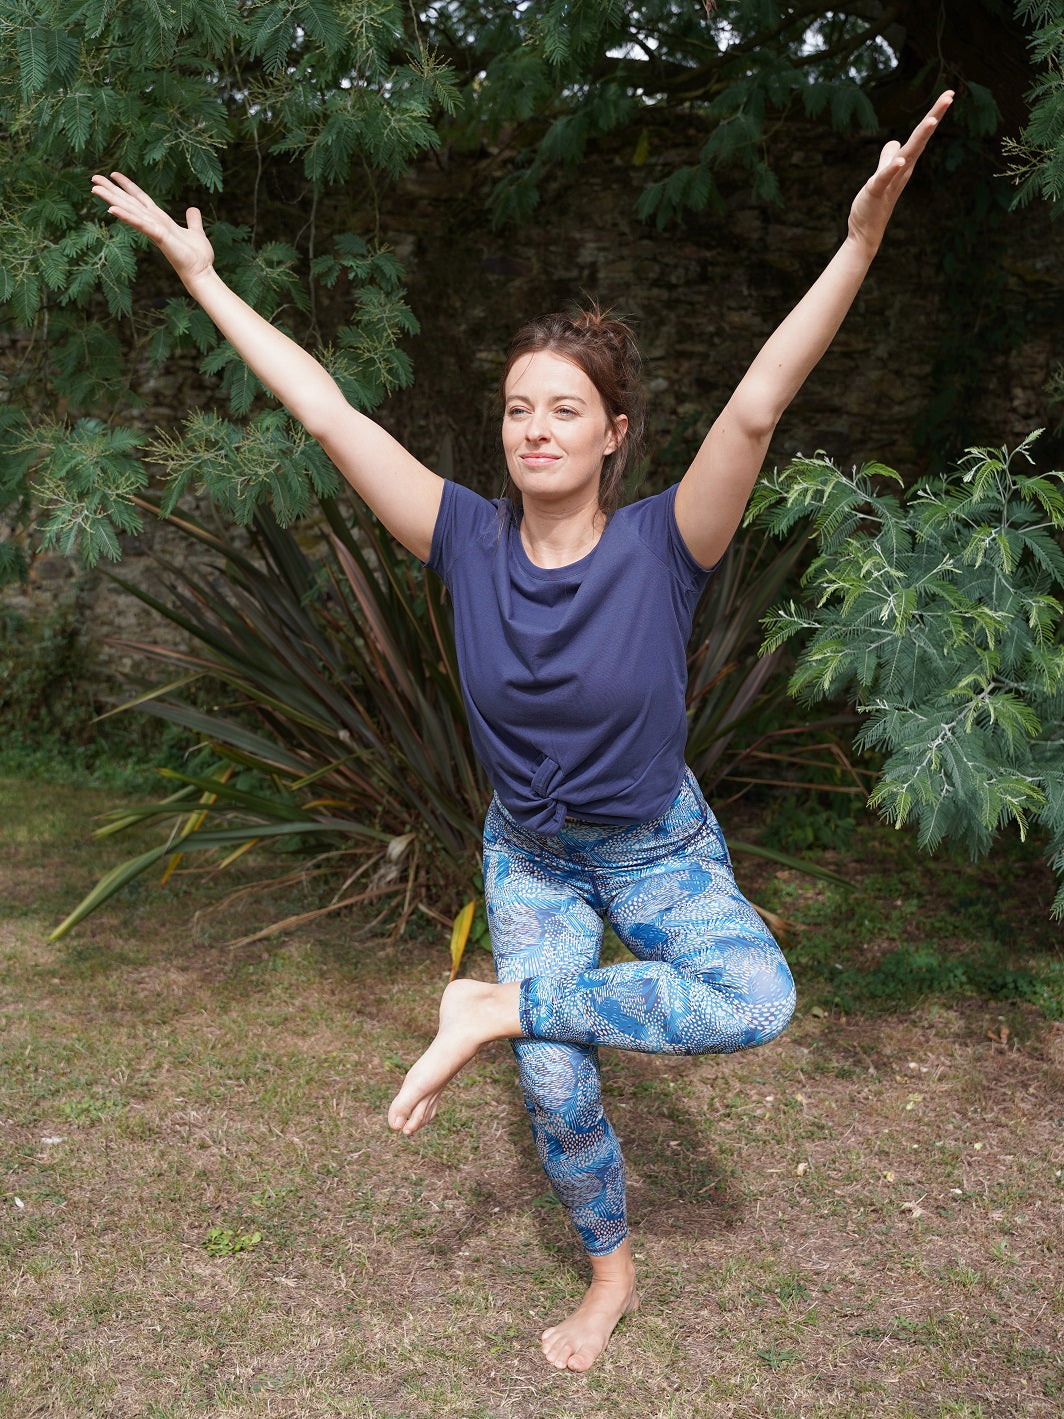 legging de yoga motif jungle bleue écoresponsable fabriquée en France à partir de matériaux recyclés